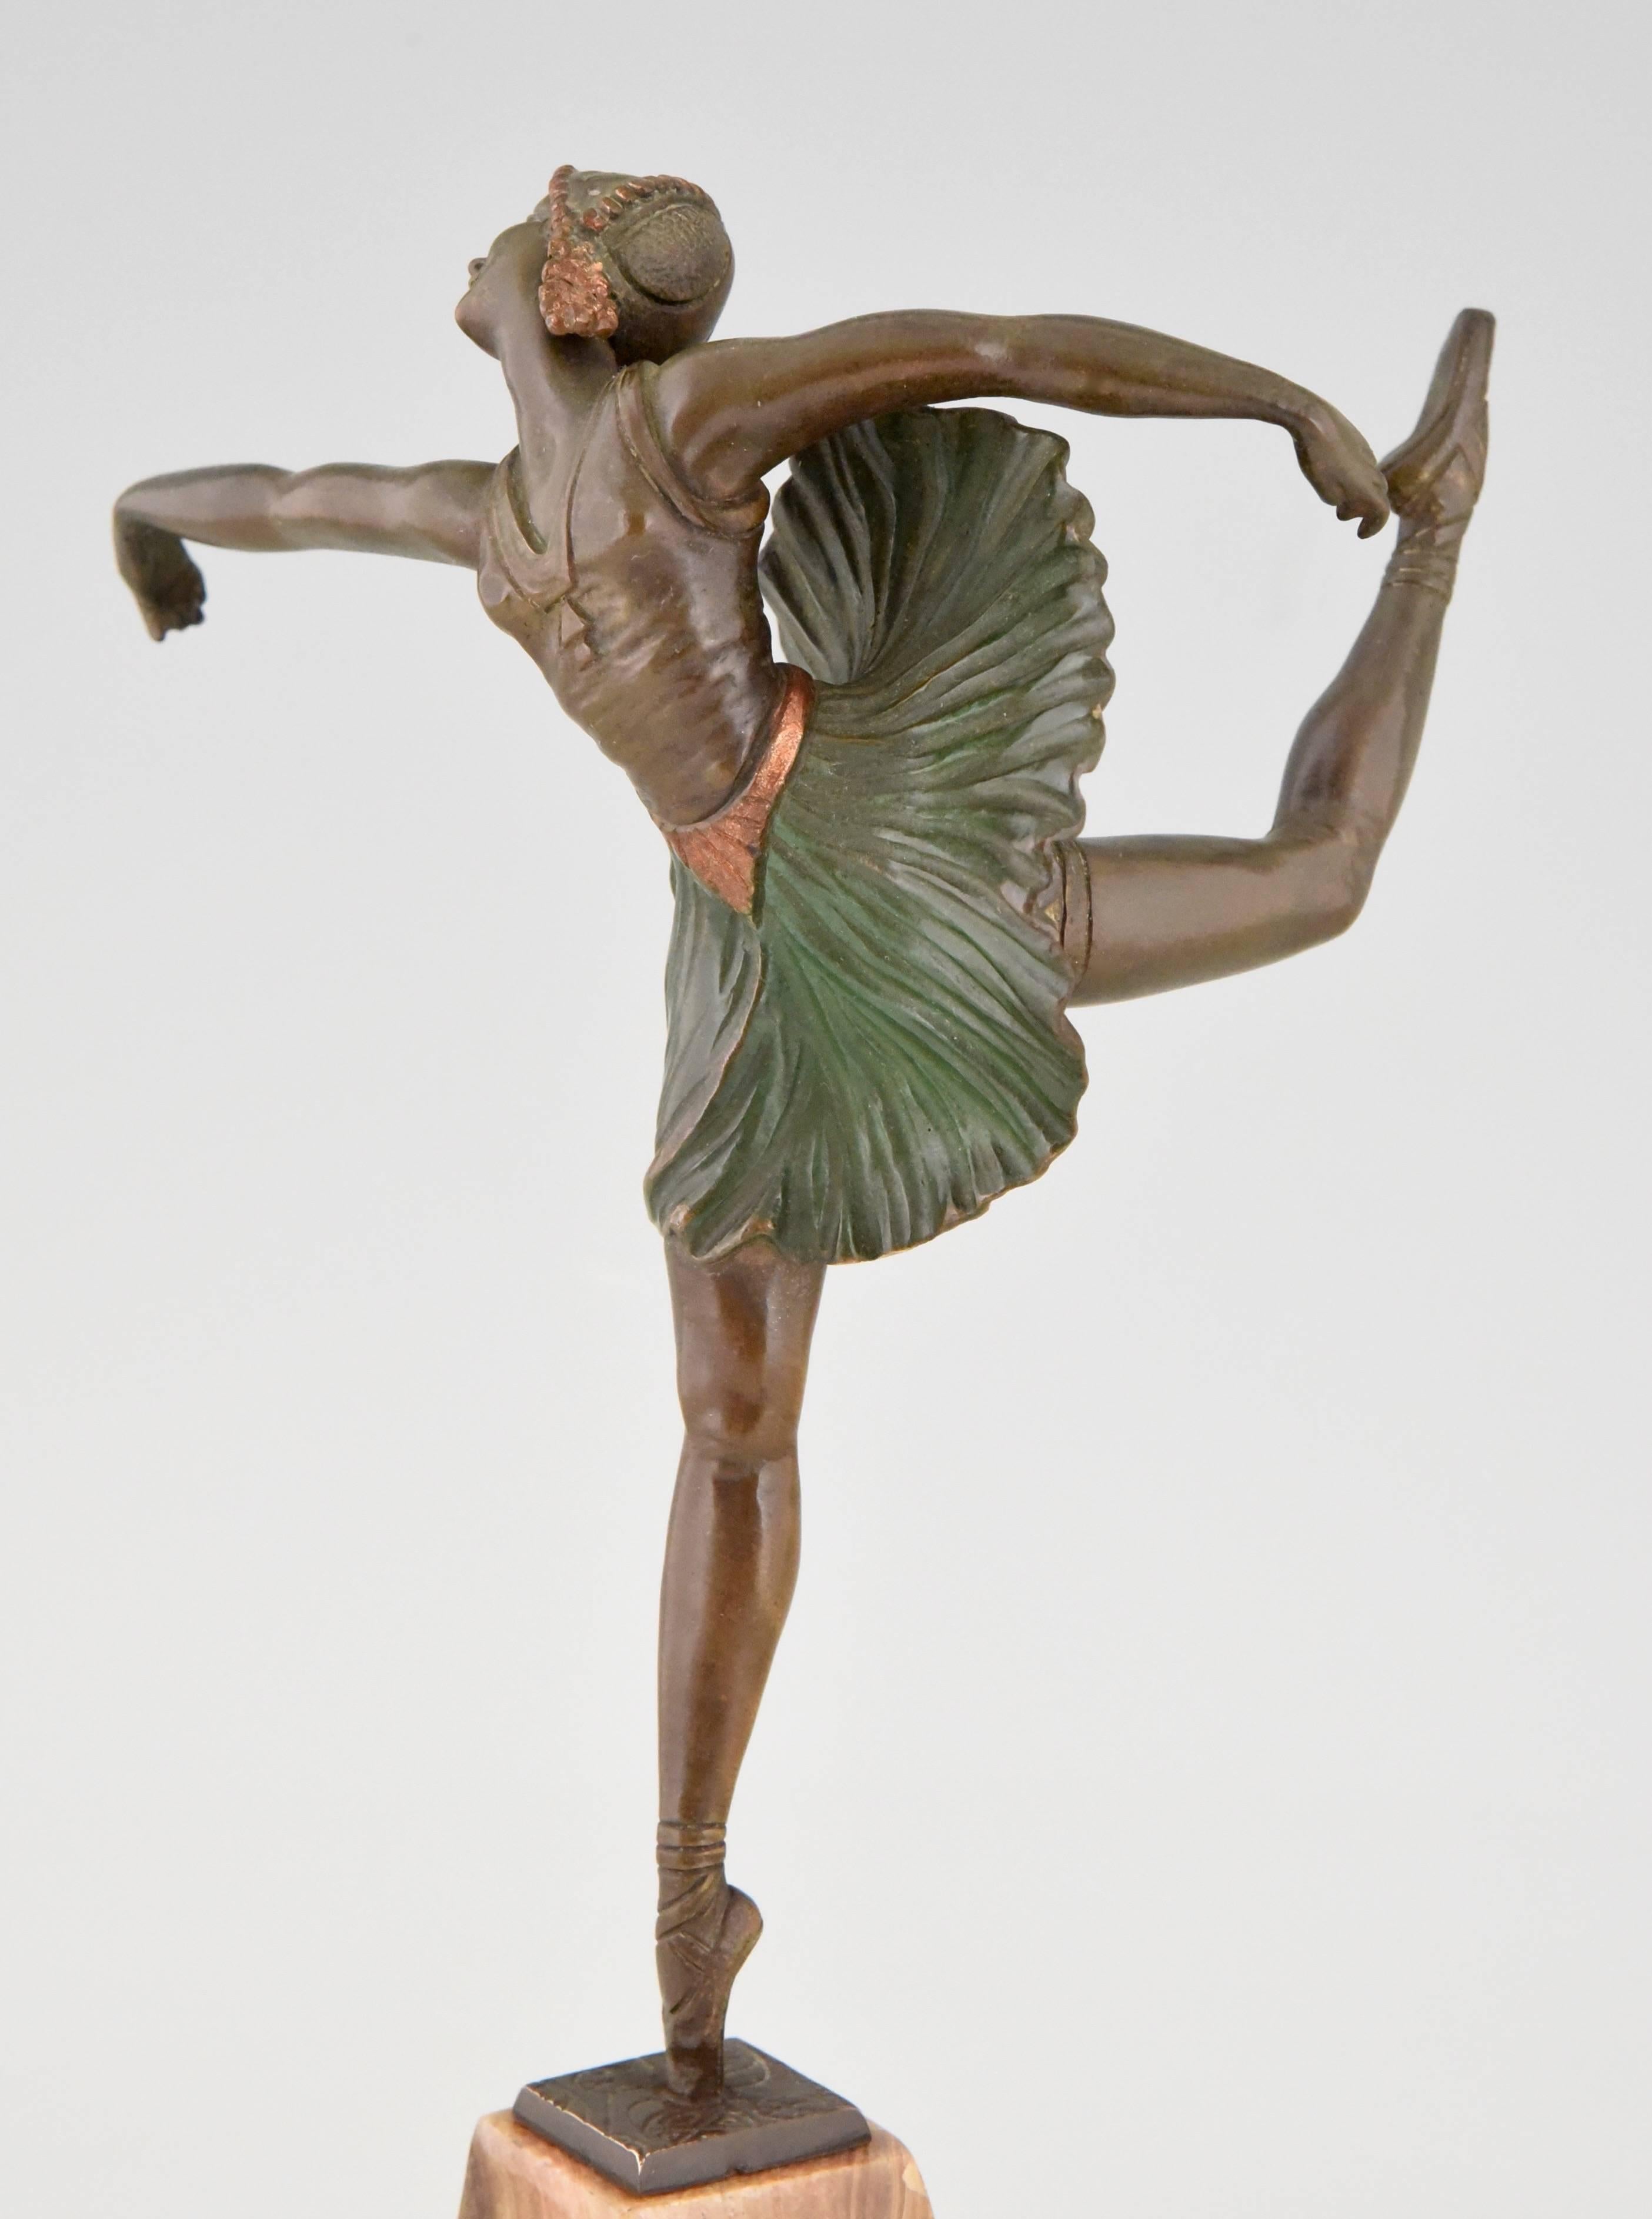 20th Century French Art Deco Bronze Sculpture Dancer Ballerina by Hippolyte Fournier, 1930